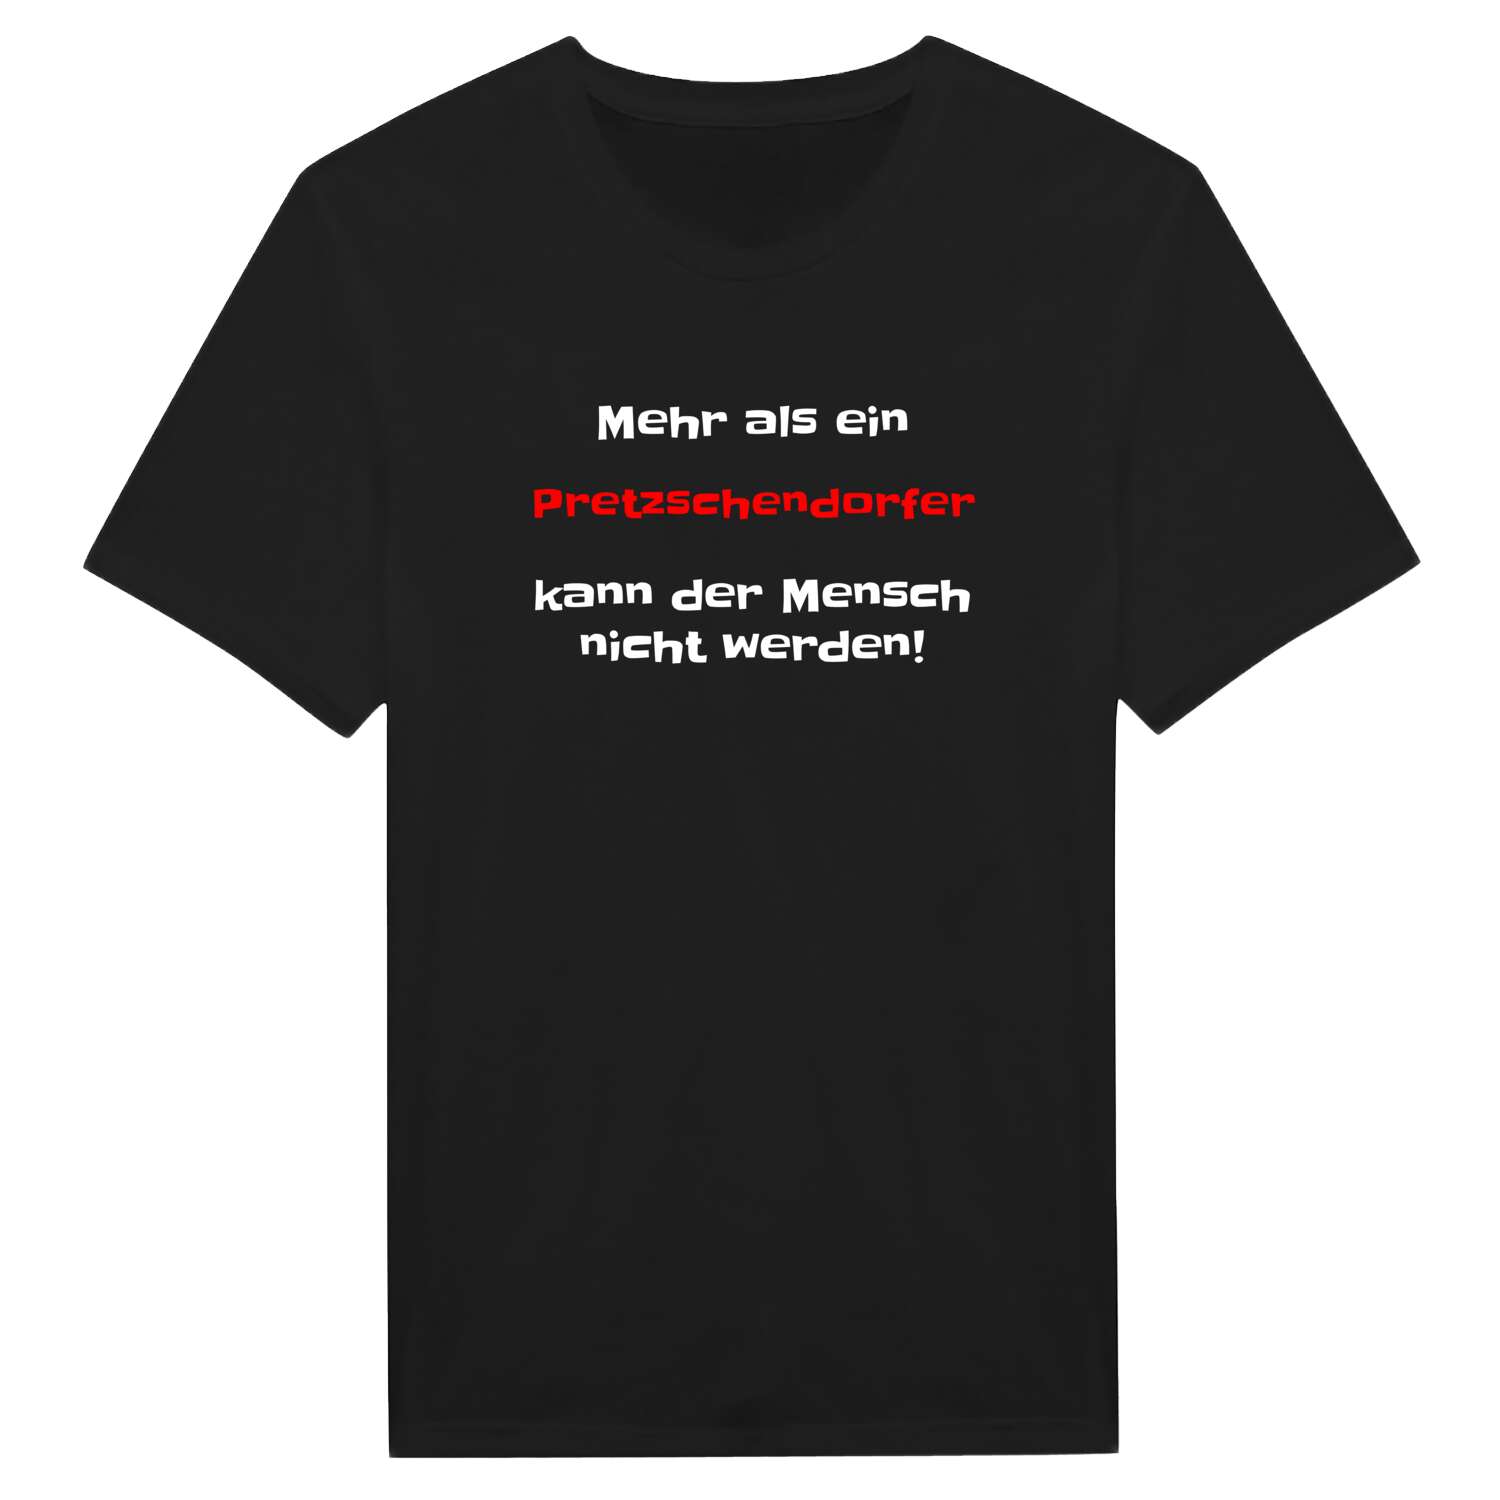 Pretzschendorf T-Shirt »Mehr als ein«